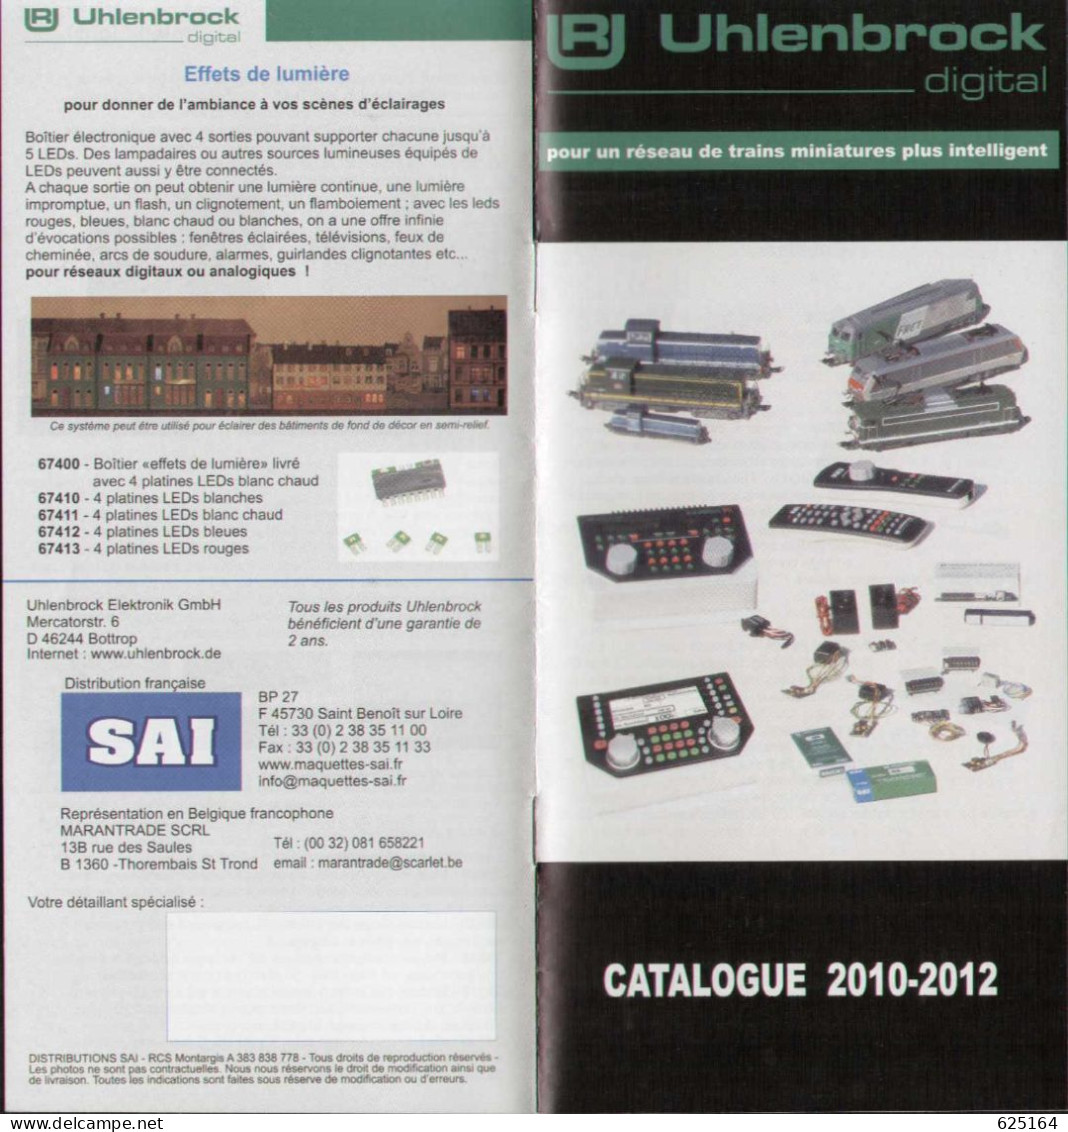 Catalogue UHLENBROCK DIGITAL 2010-2012 Pour Un Rèseau Plus Intelligent - French